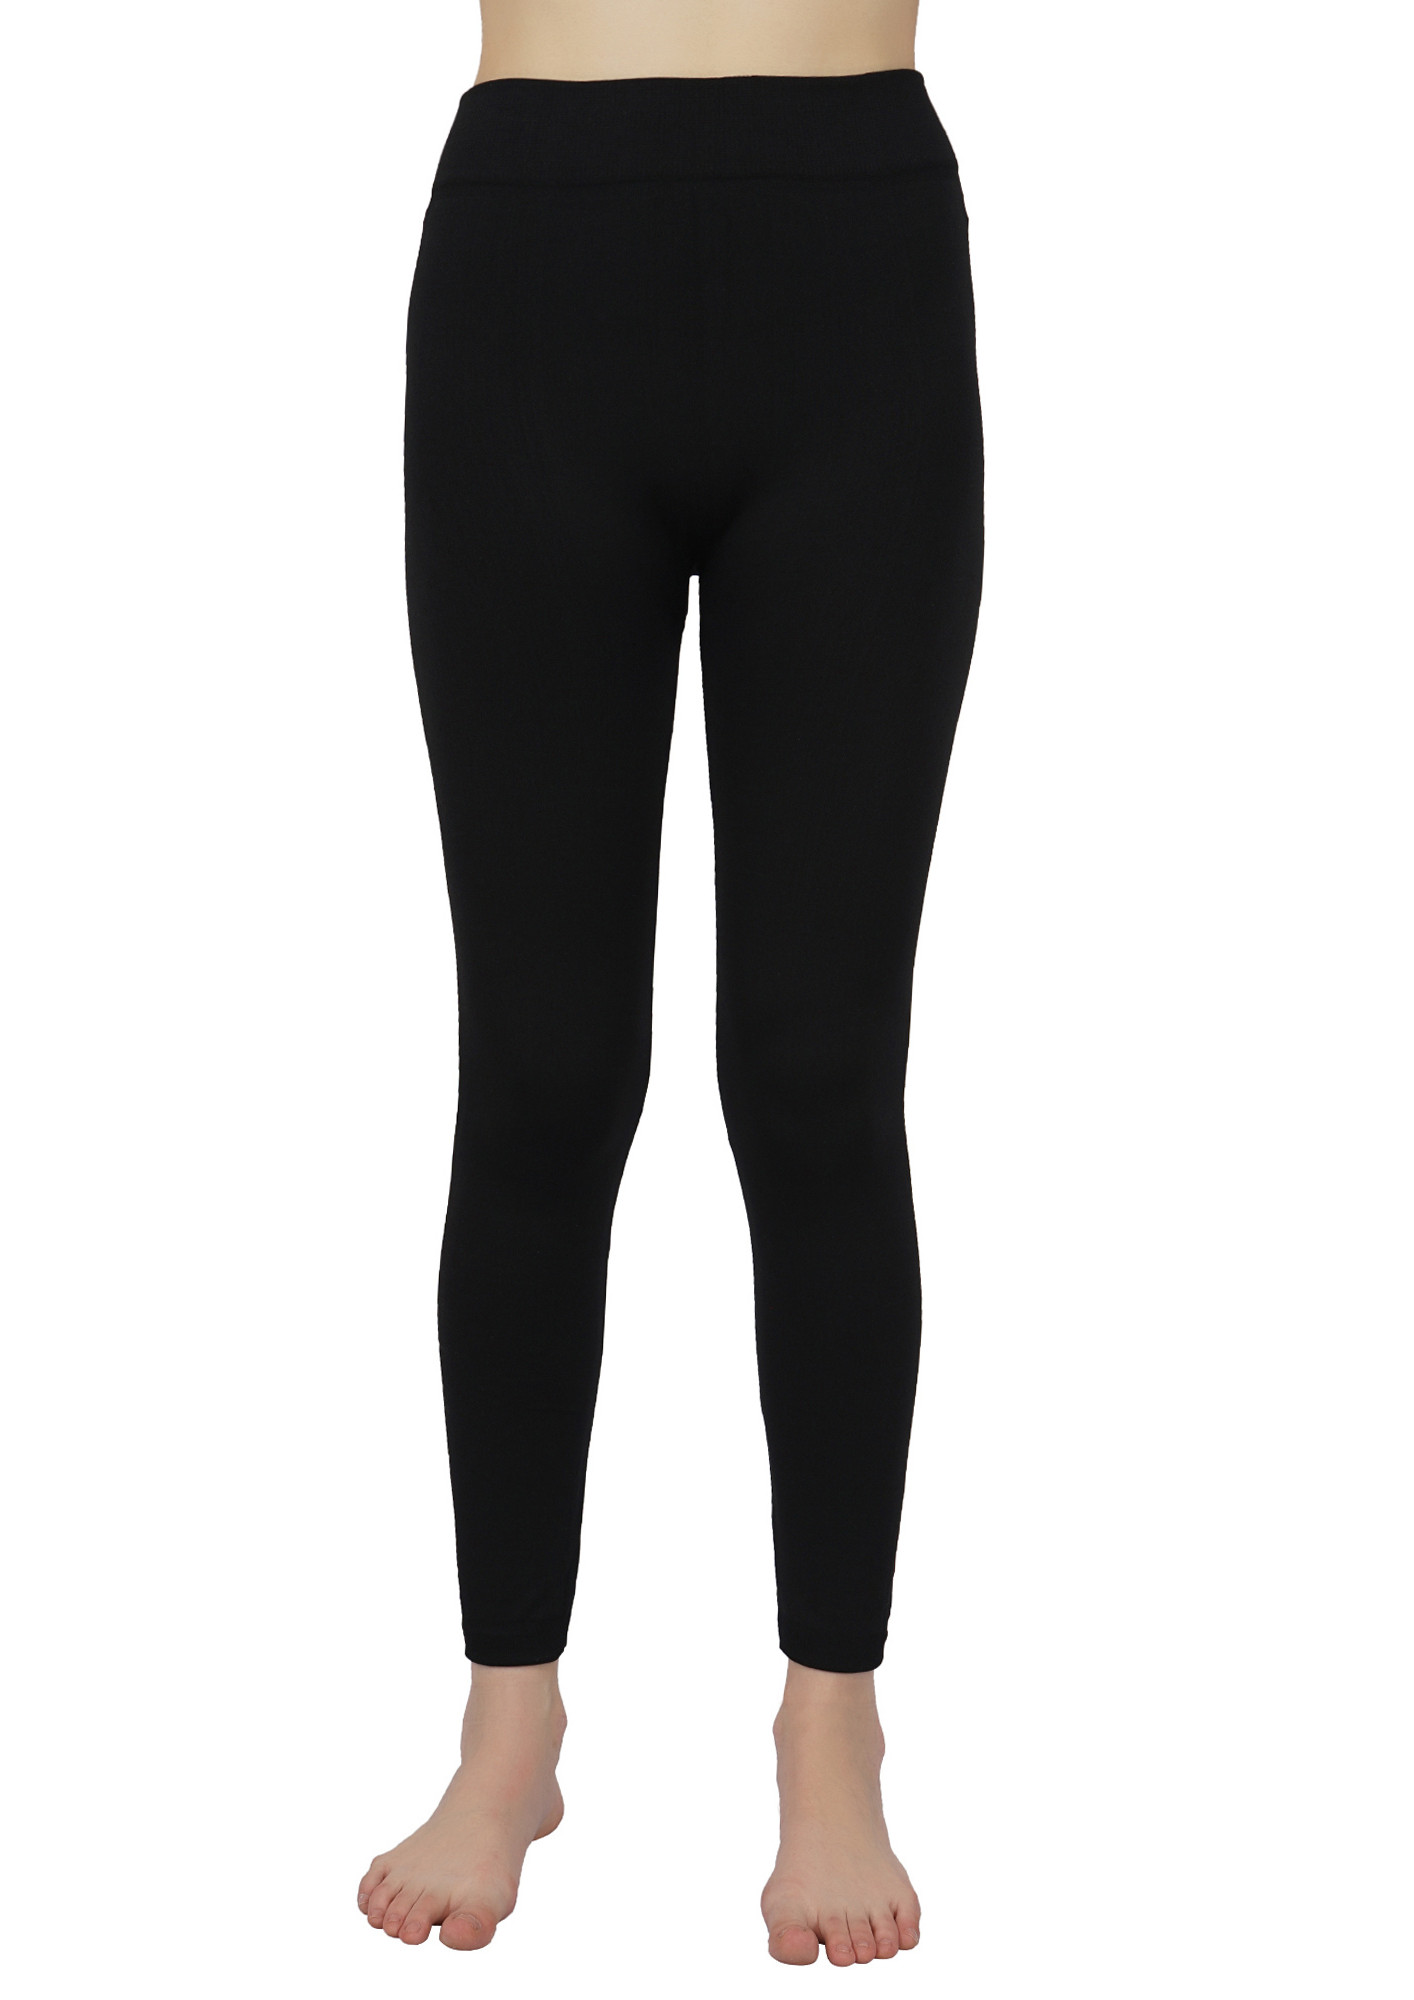 Buy online Black Woolen Leggings from winter wear for Women by